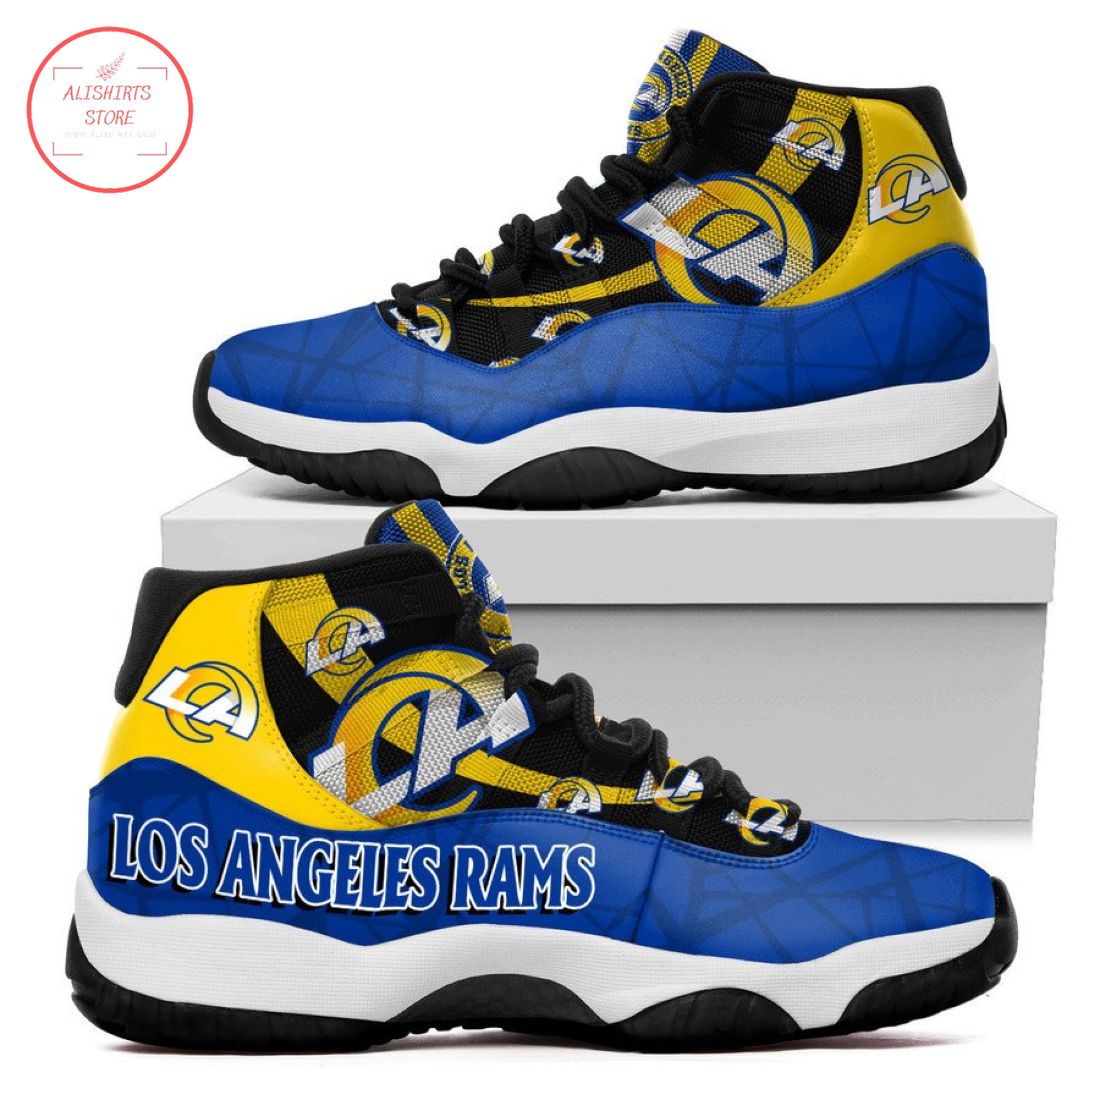 NFL Los Angeles Rams New Air Jordan 11 Sneakers Shoes